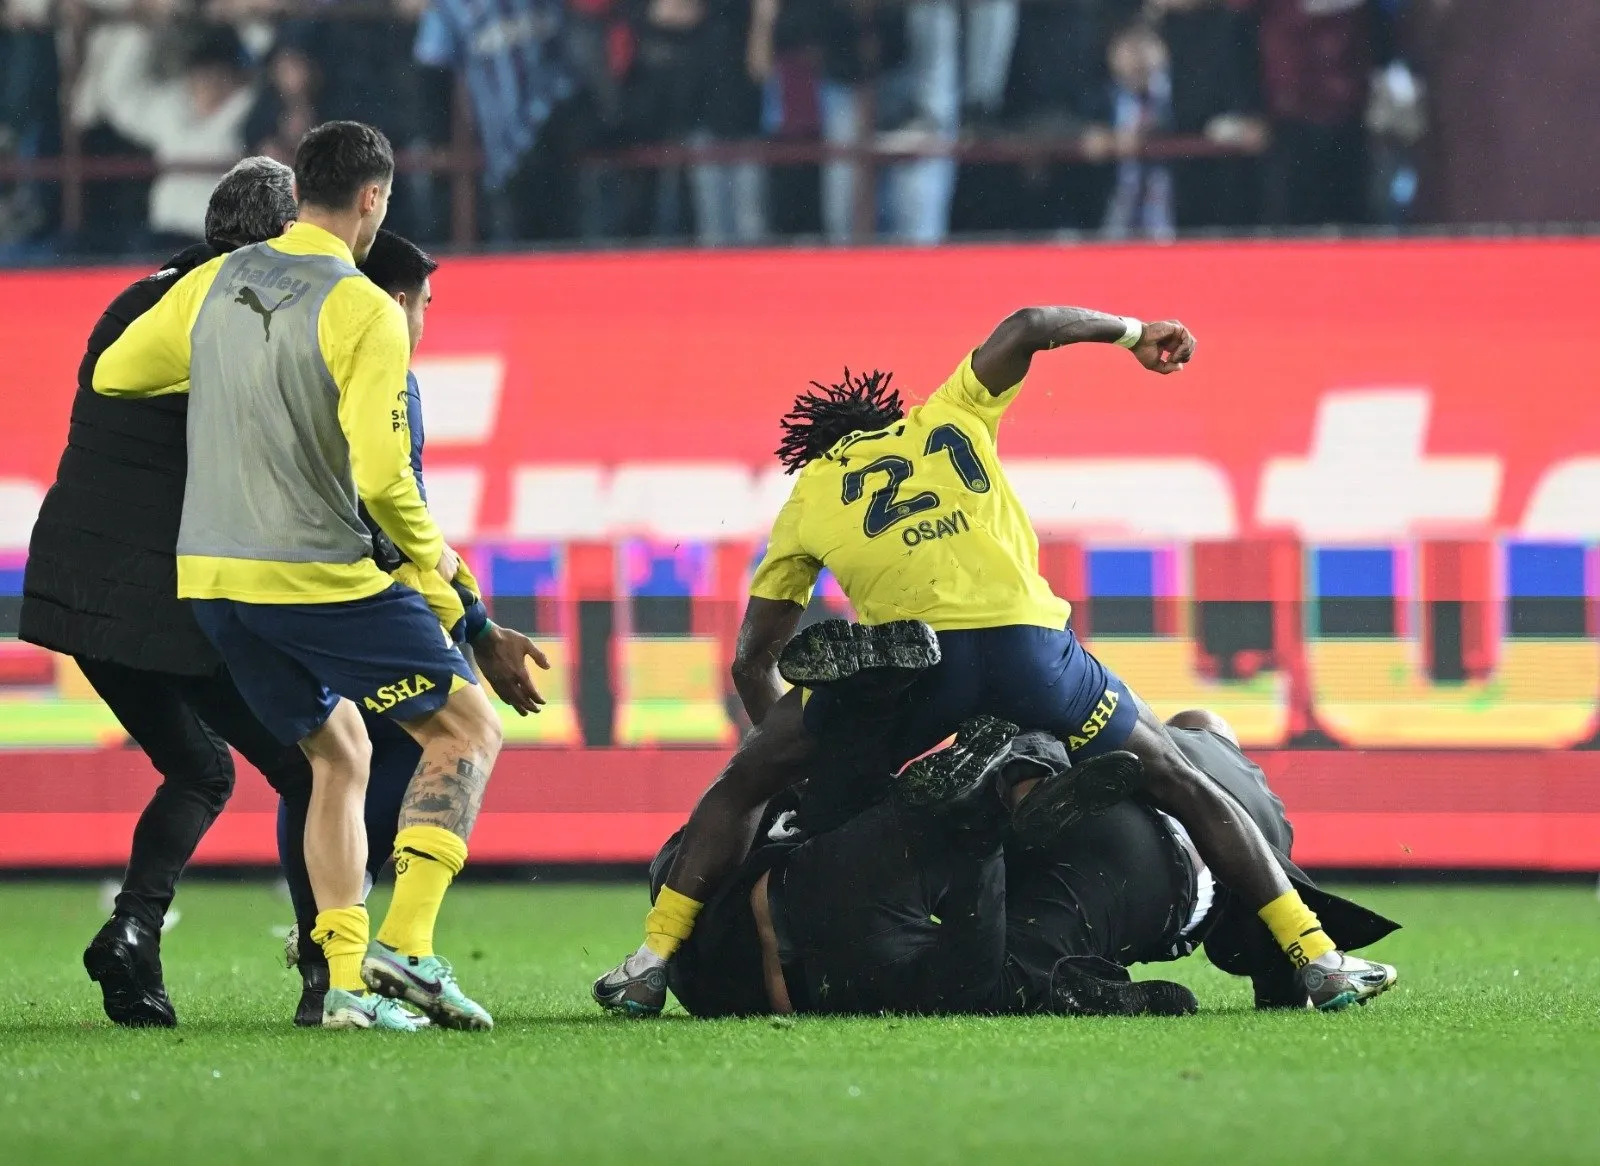 SON DAKİKA: Trabzonspor - Fenerbahçe maçında ortalık bir anda karıştı! Maç biter bitmez taraftarlar ve futbolcular kavga etti - Galeri - Spor